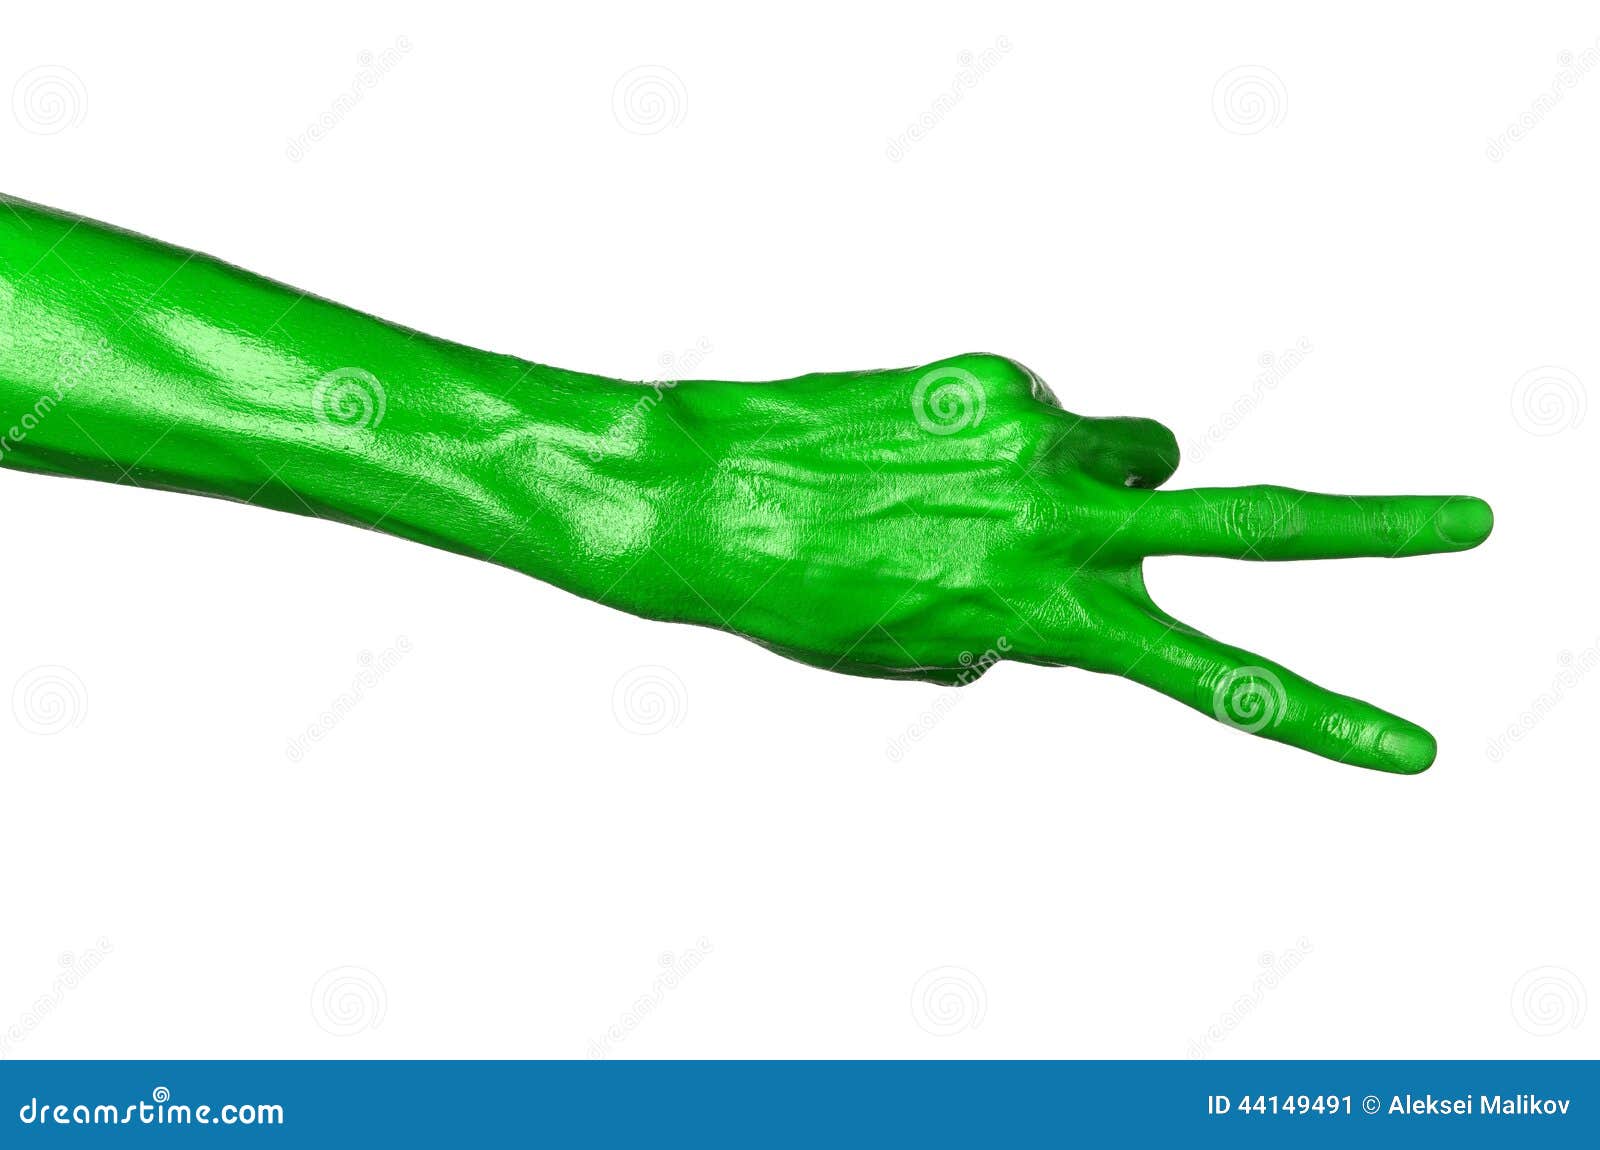 Правая рука зеленая. Зеленая рука. Зеленые руки на белом фоне. Зеленая ладонь на белом фоне. Руки в зеленой краске.